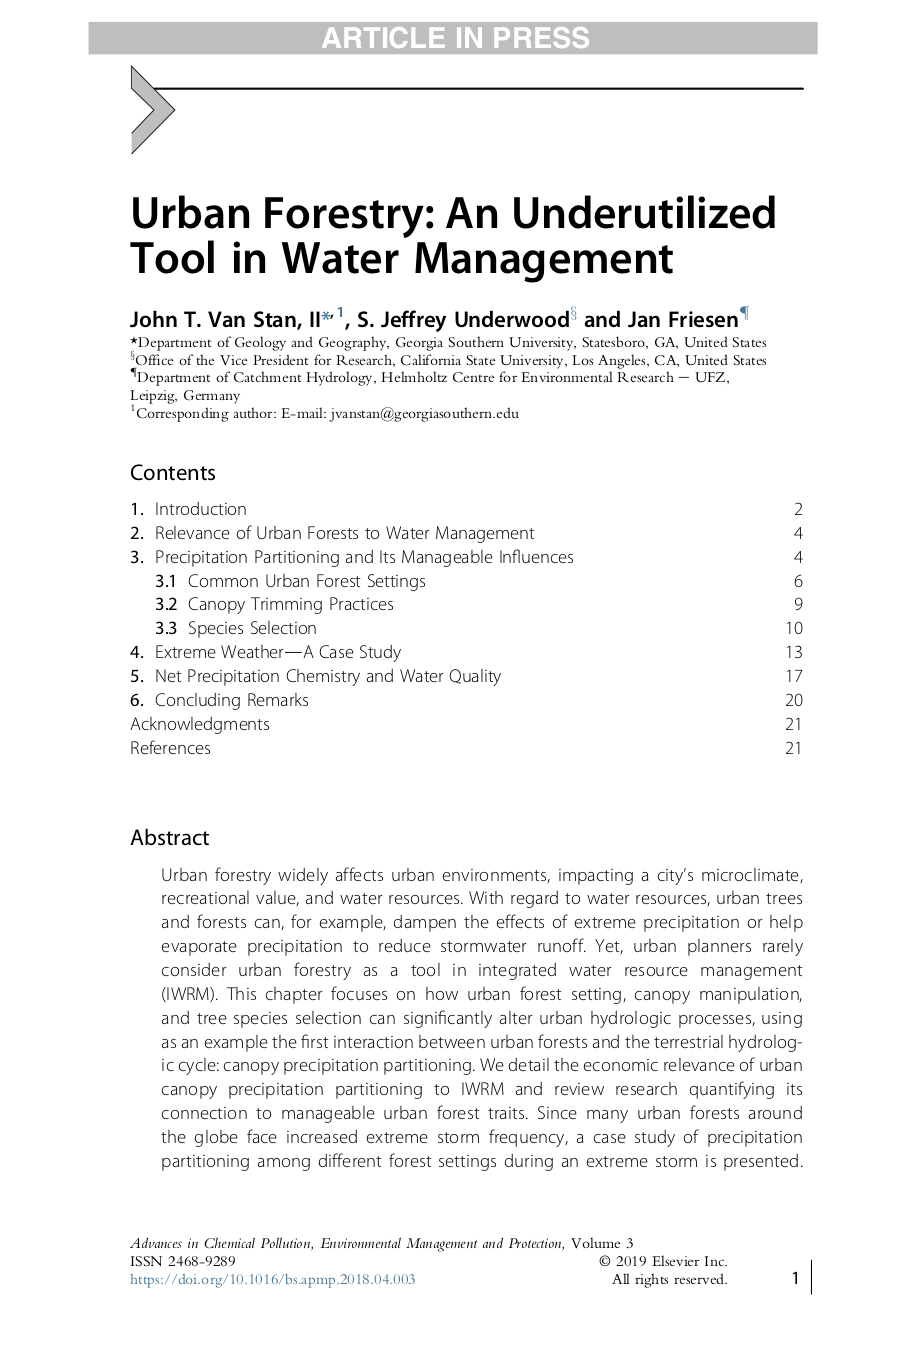 Wissenschaftlicher Artikel - Urban Forestry: An Underutilized Tool in Water Management